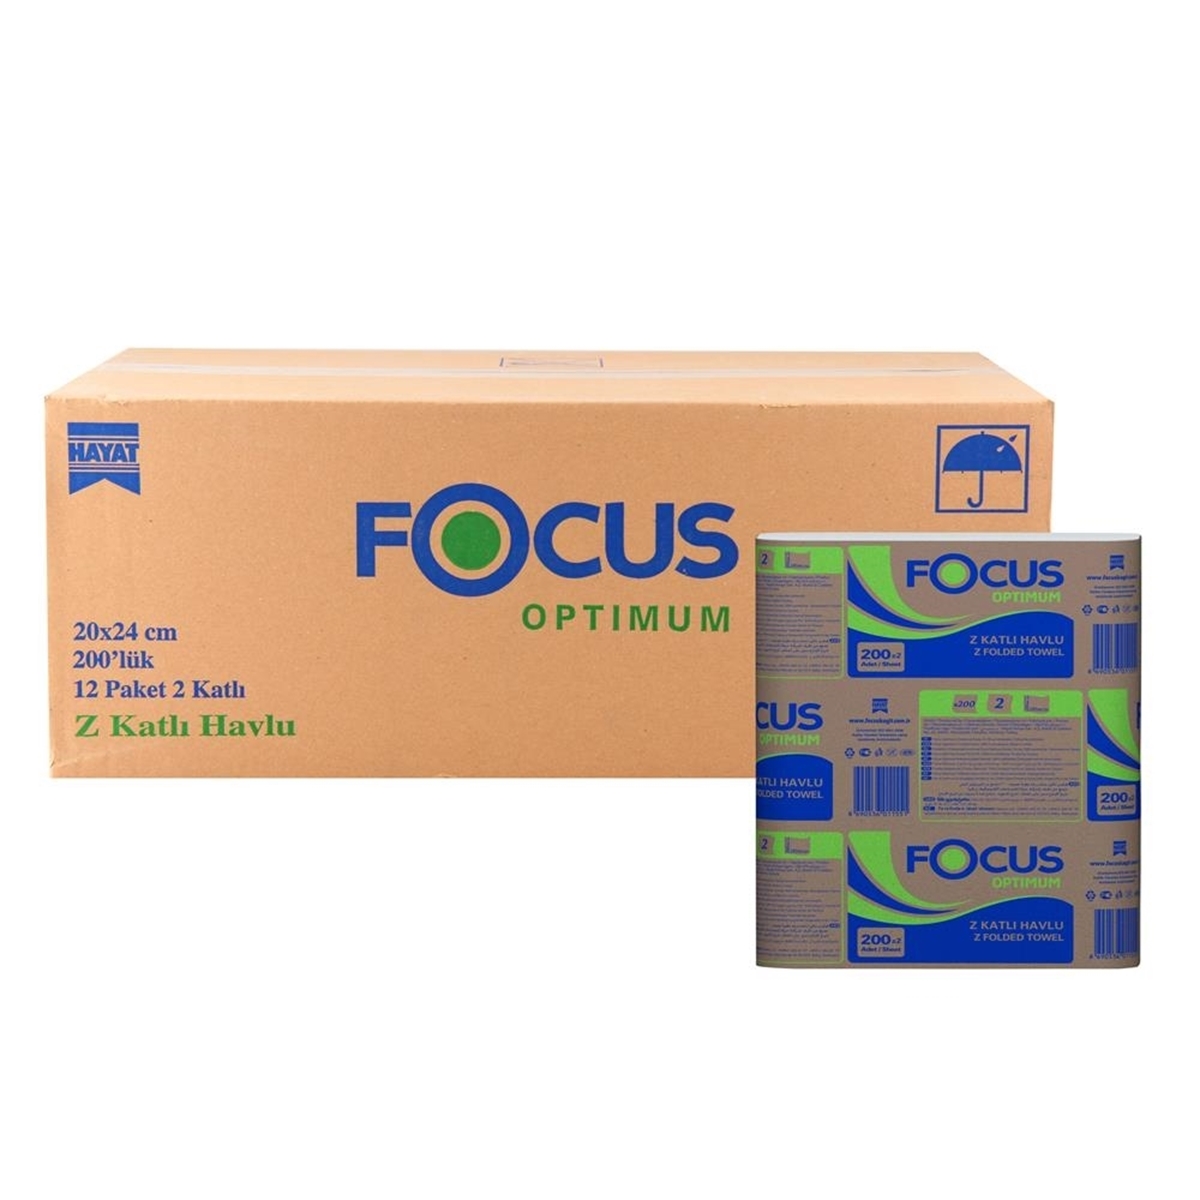 Focus Optimum Z Katlamalı Havlu 200 Yaprak x 12 Paket resmi